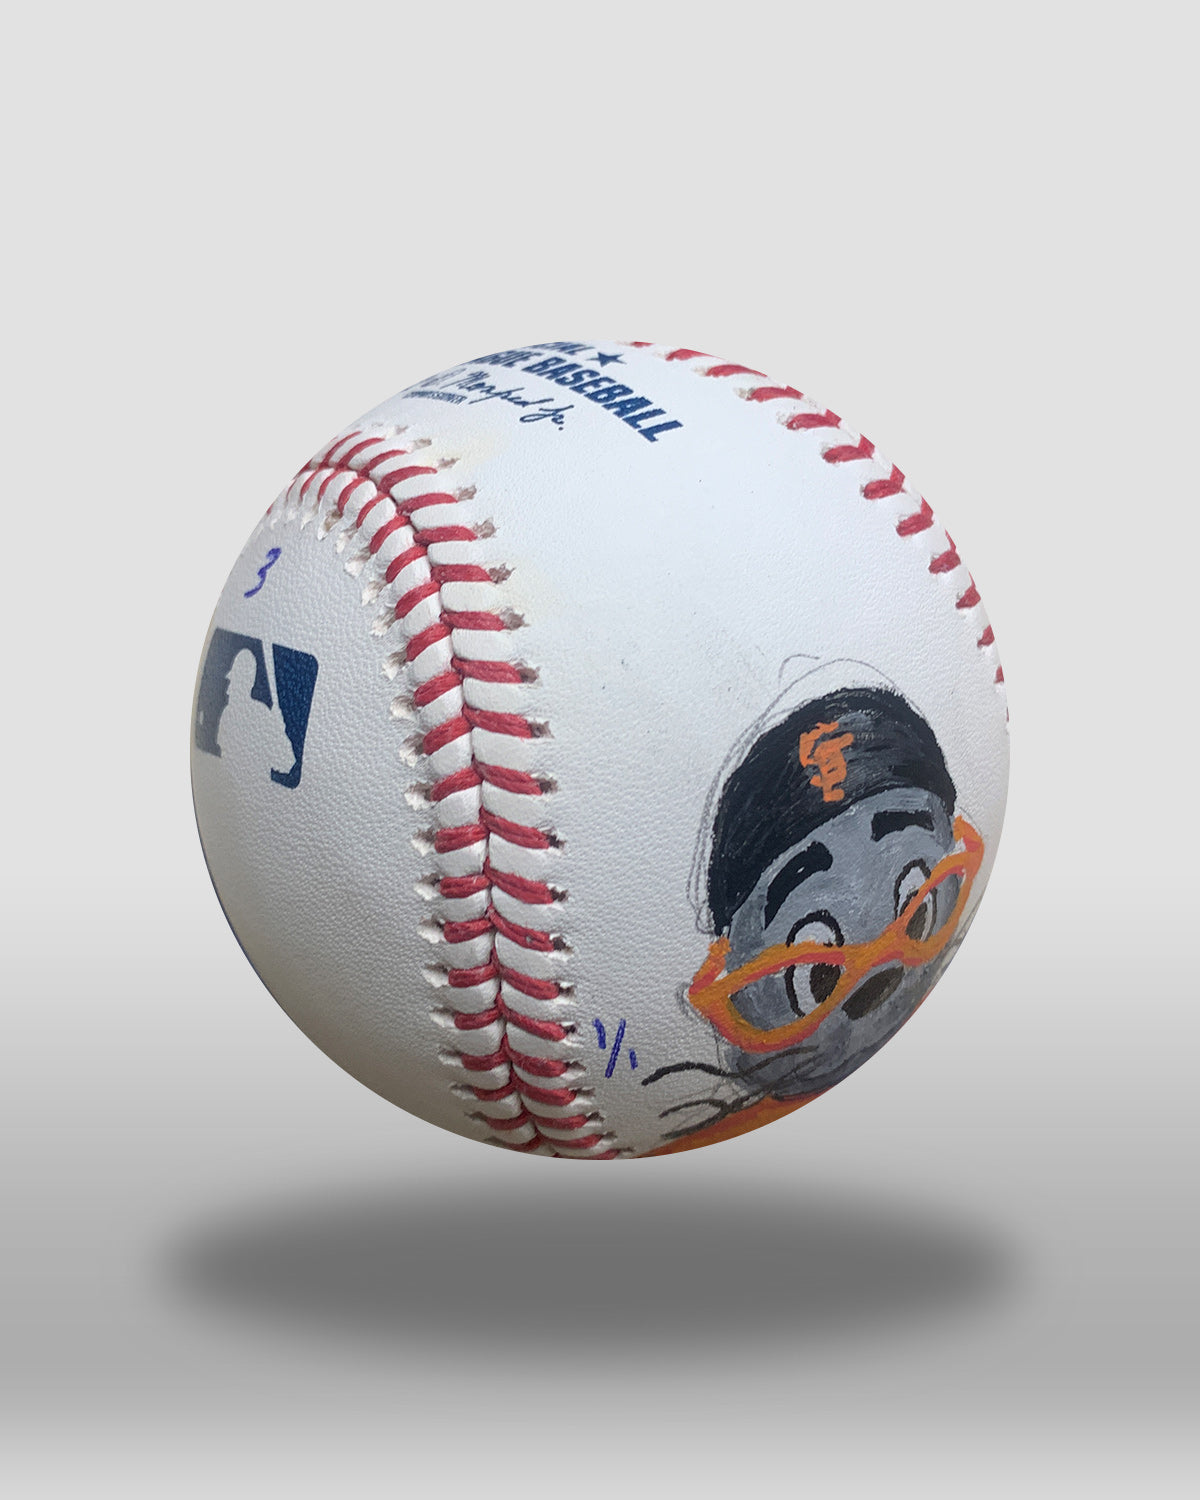 Lou Seal Hand-Painted Baseball Art